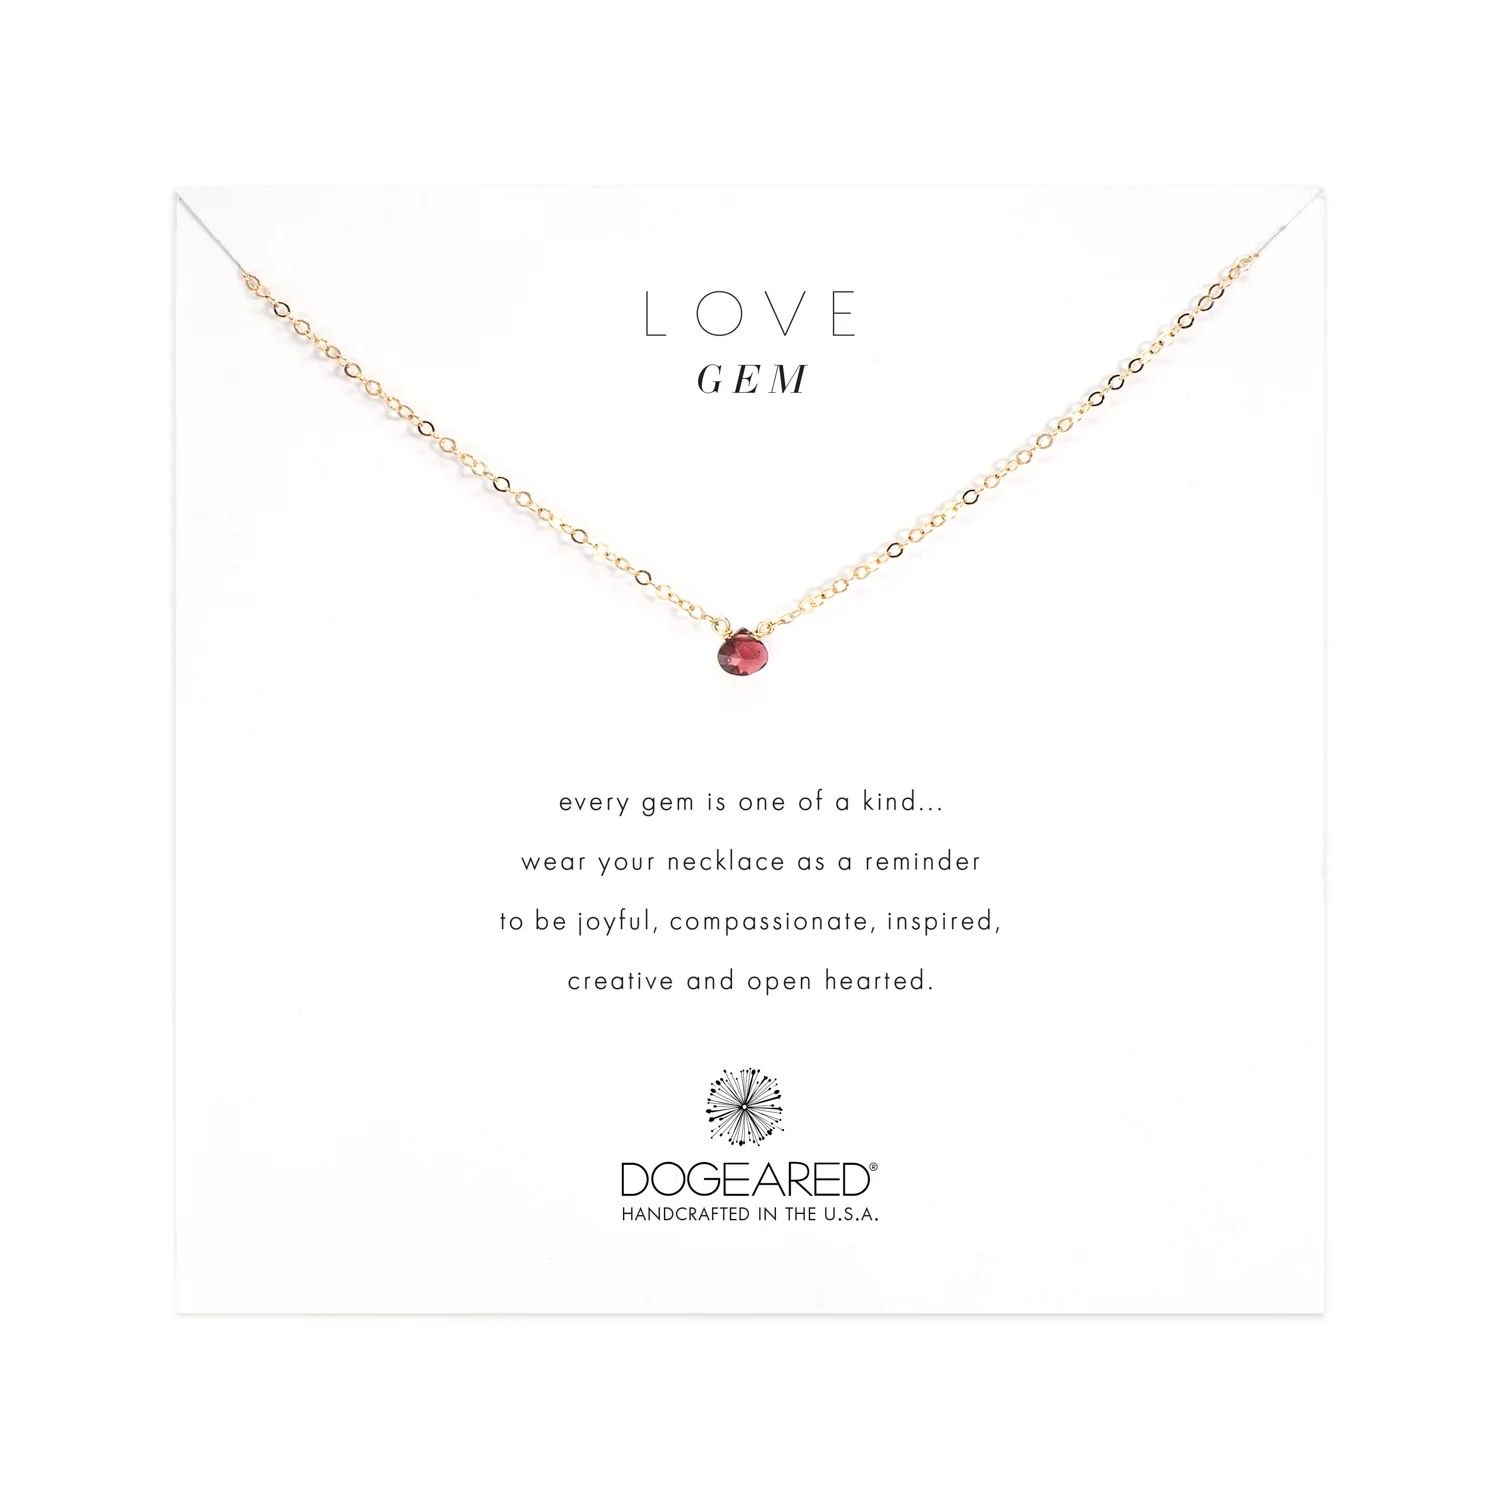 love gem faceted garnet necklace | Dogeared